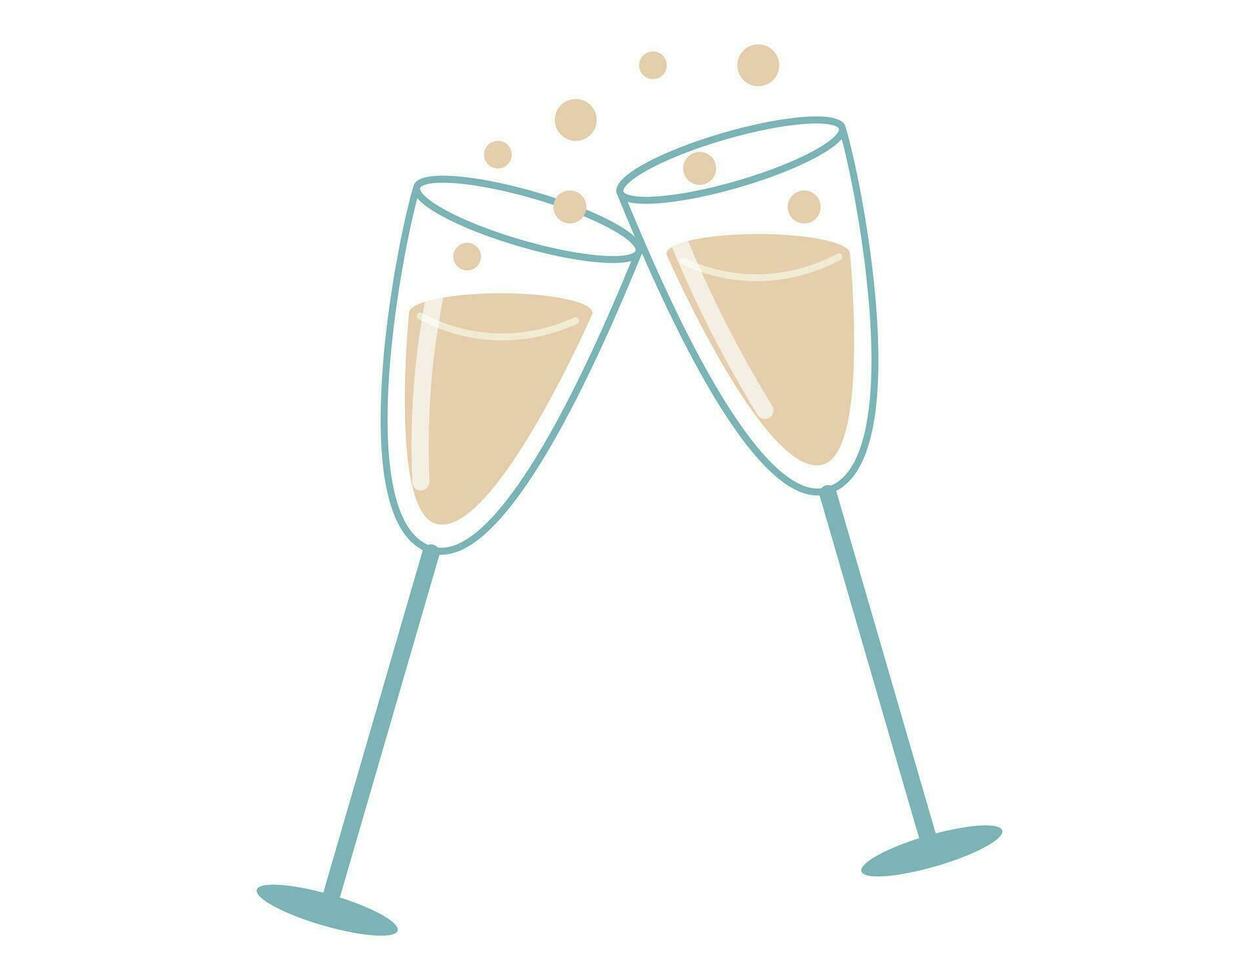 paire de dessin animé de fête des lunettes avec alcoolique du vin ou Champagne avec bulles. vecteur isolé plat illustration.